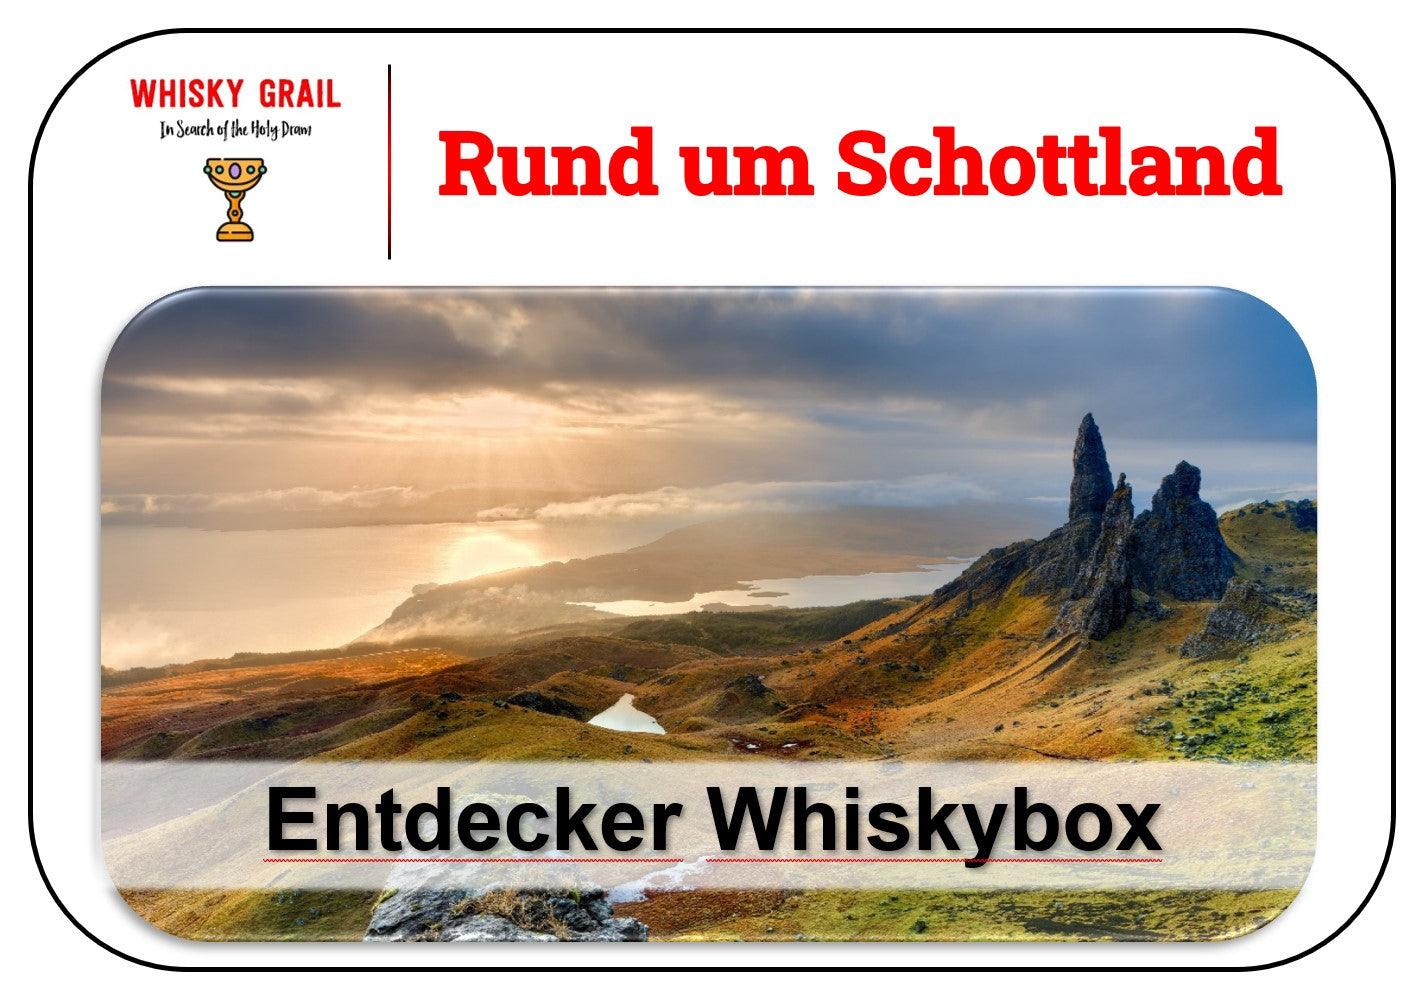 Rund um Schottland - Entdecker Whiskybox - Whisky Grail